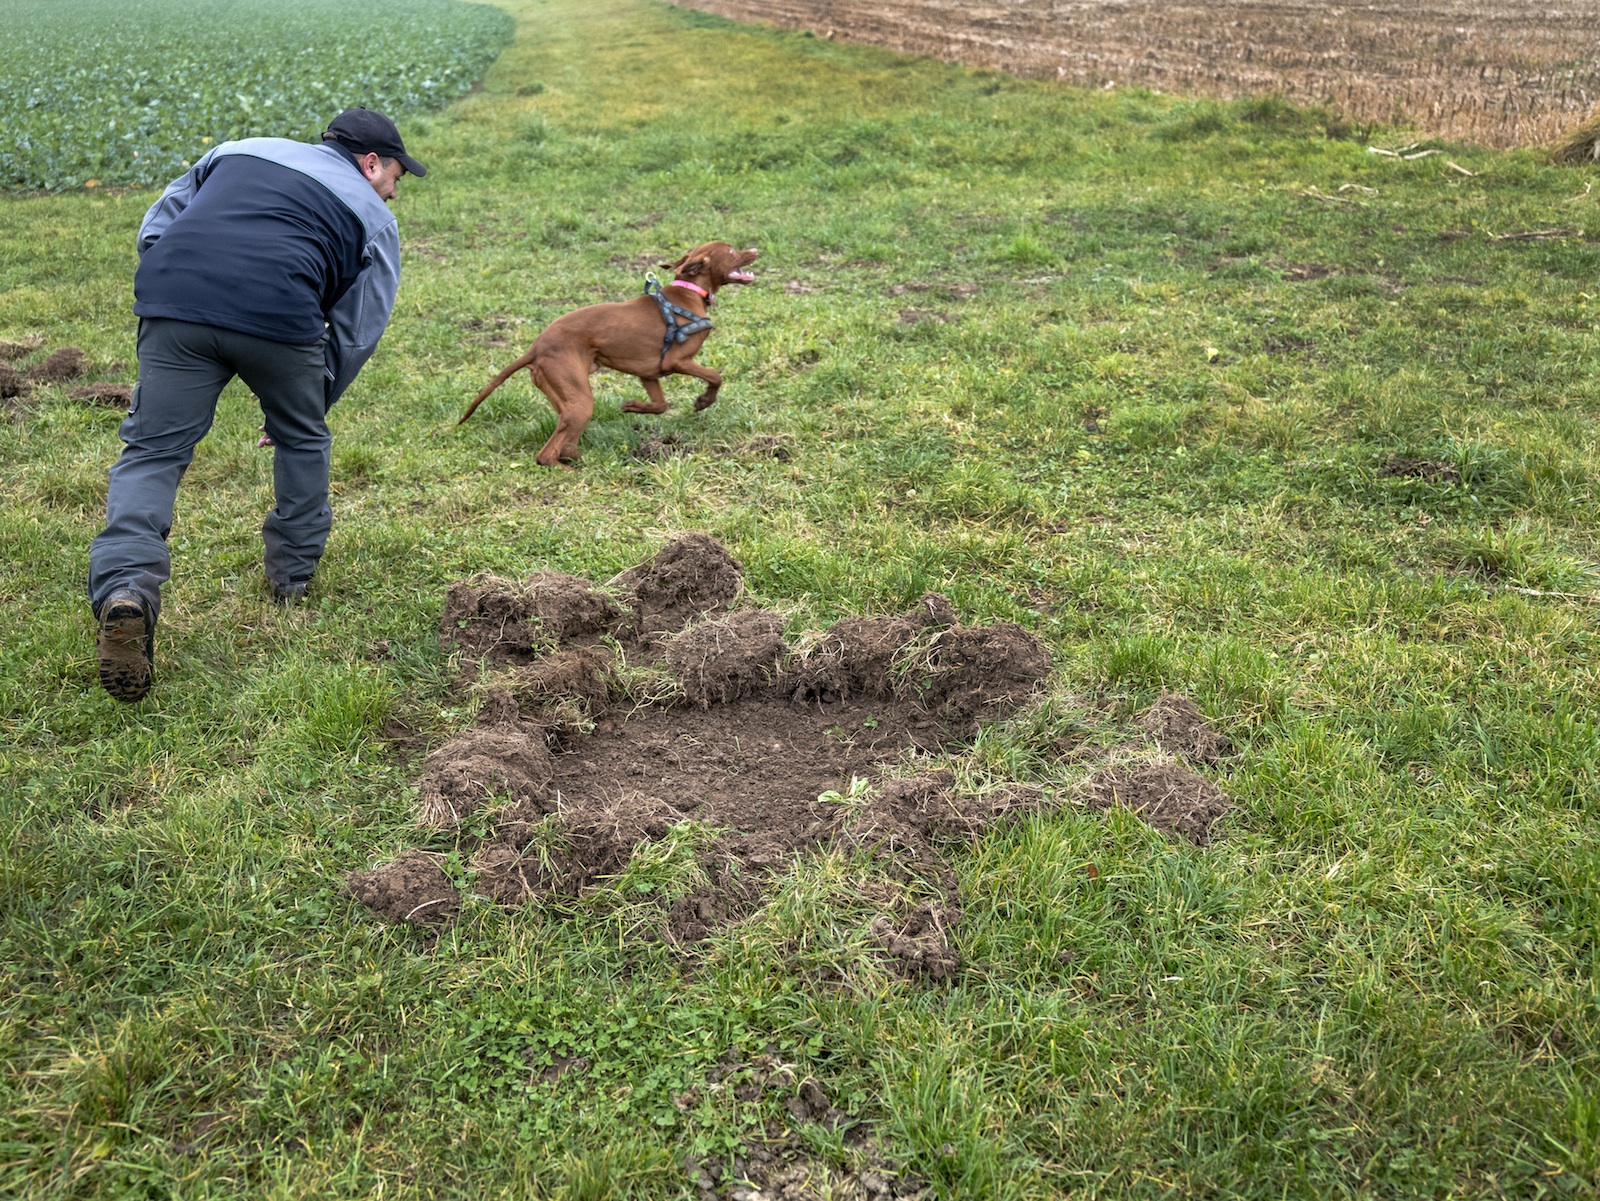 Le garde-faune et son chien dans un champ.